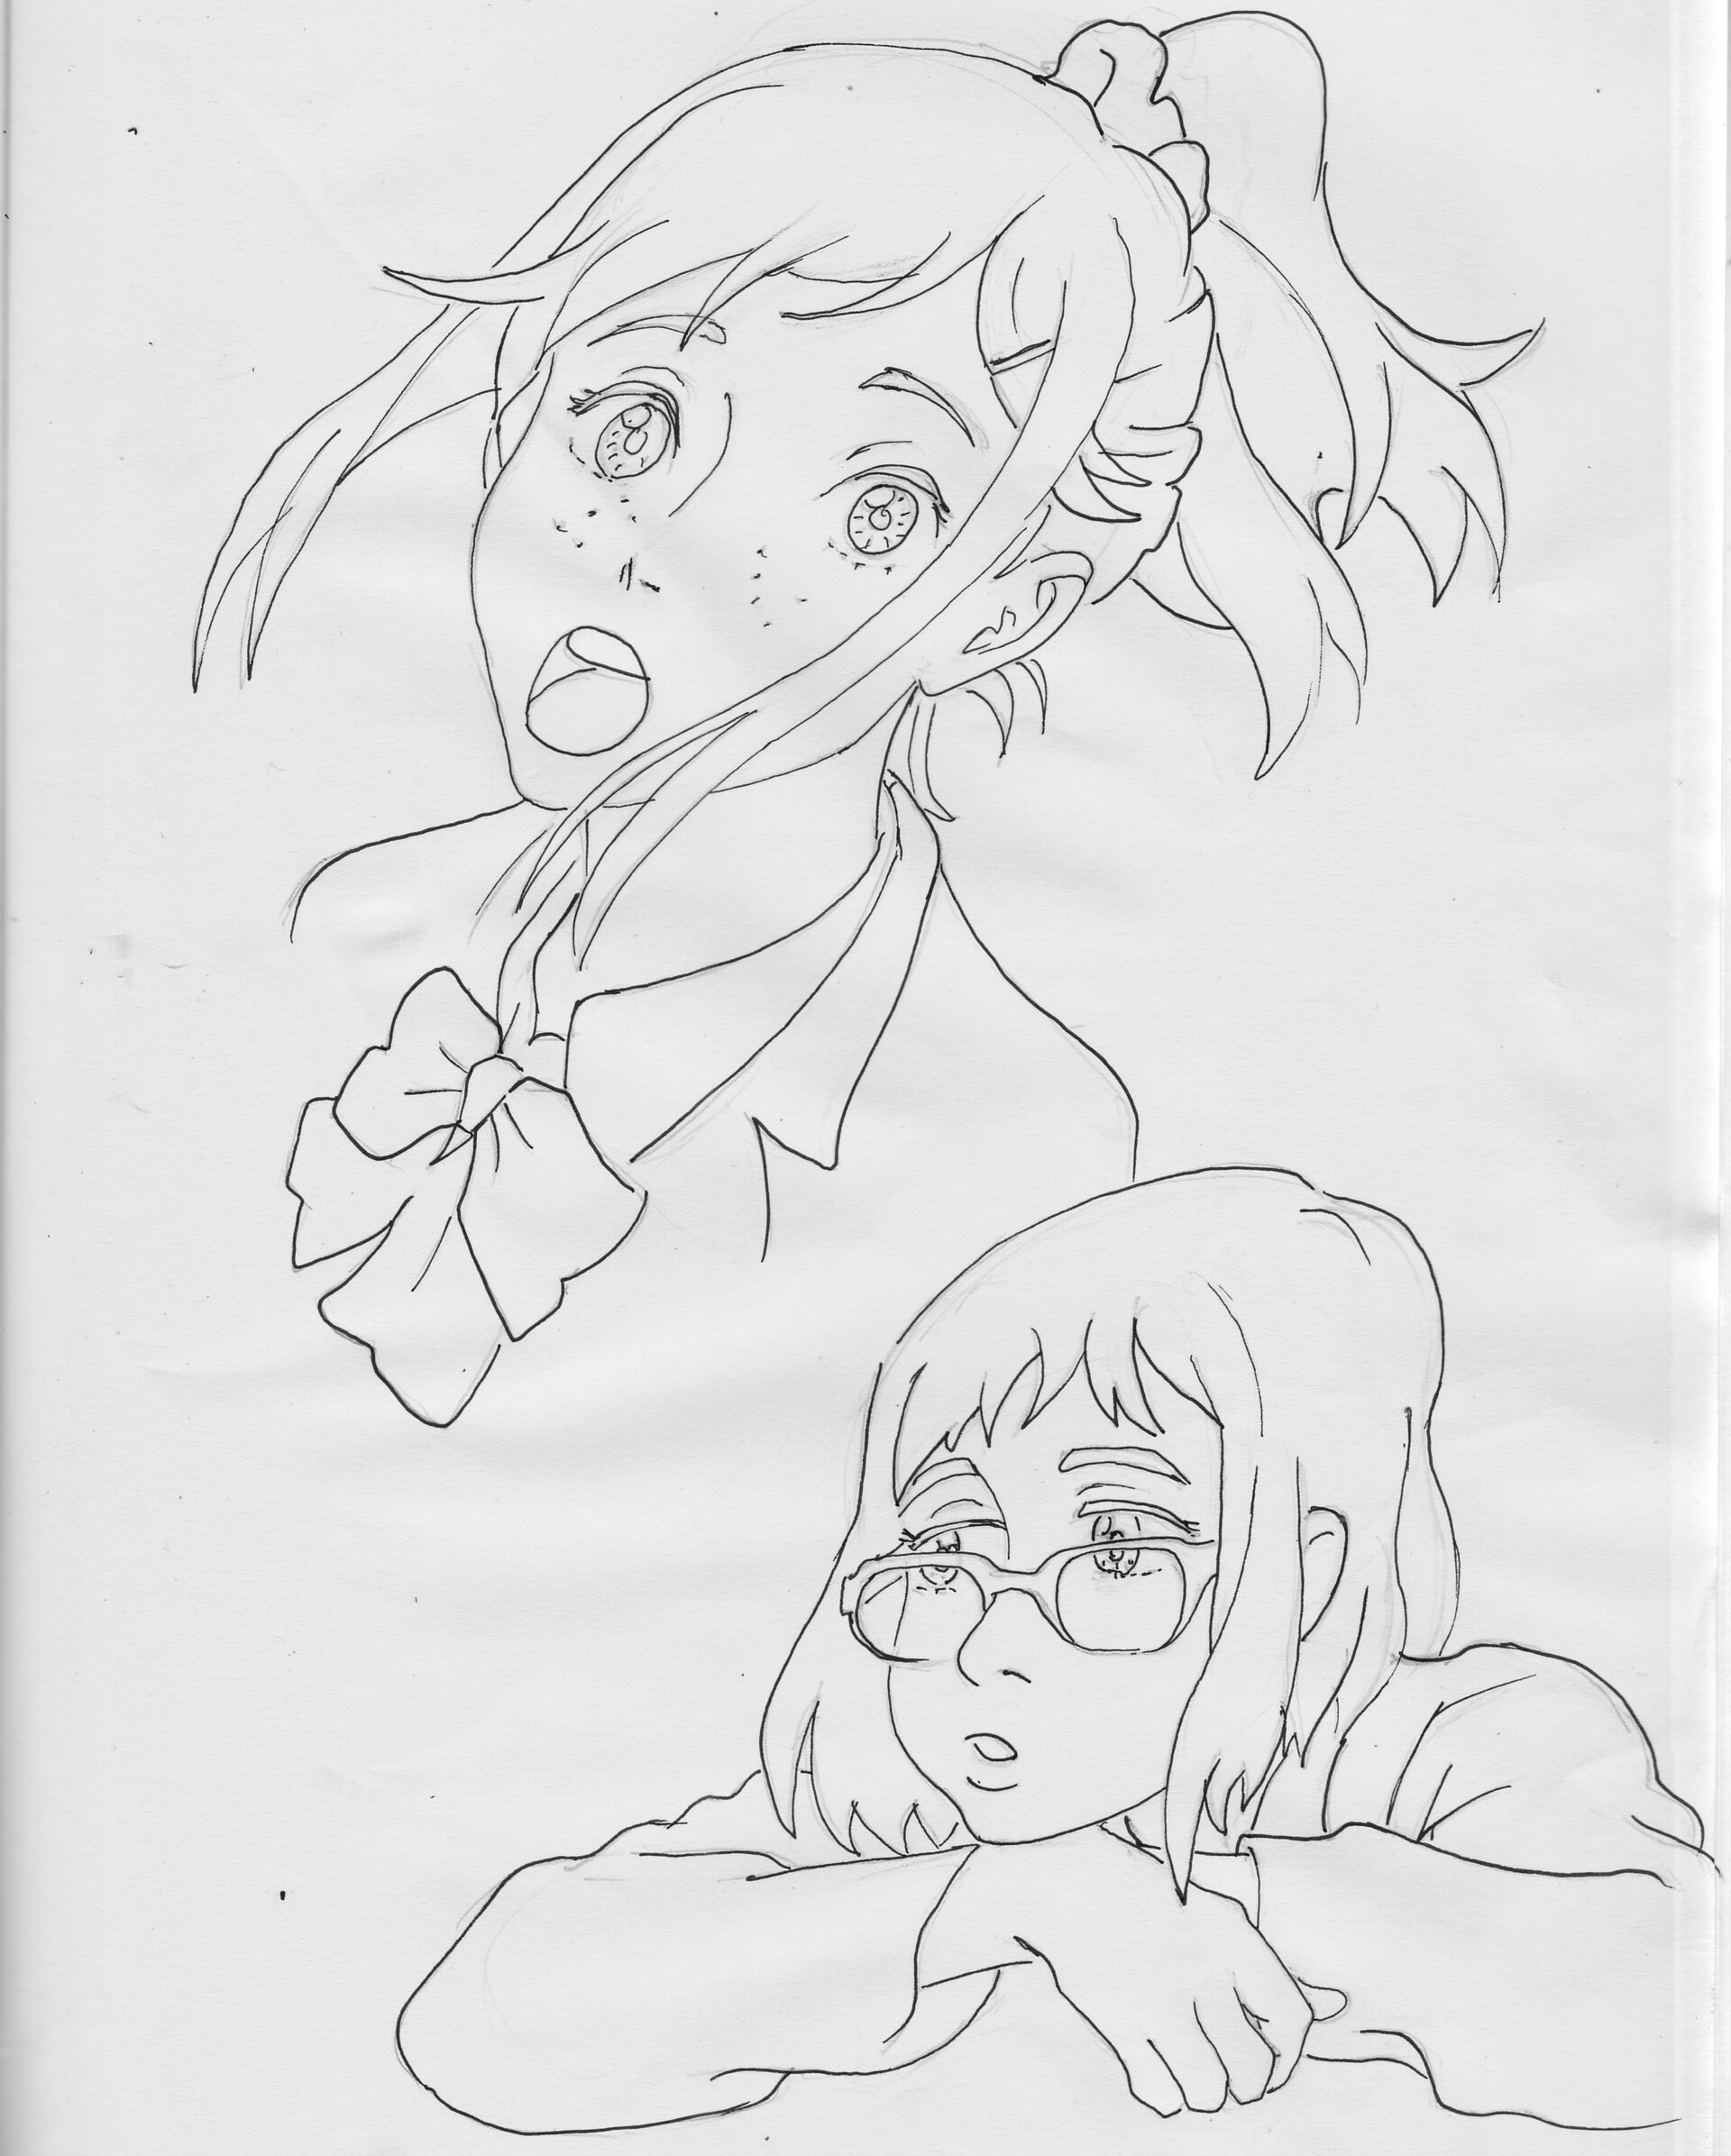 ArtStation - Anime Girl Drawing Easy Tutorial for beginners